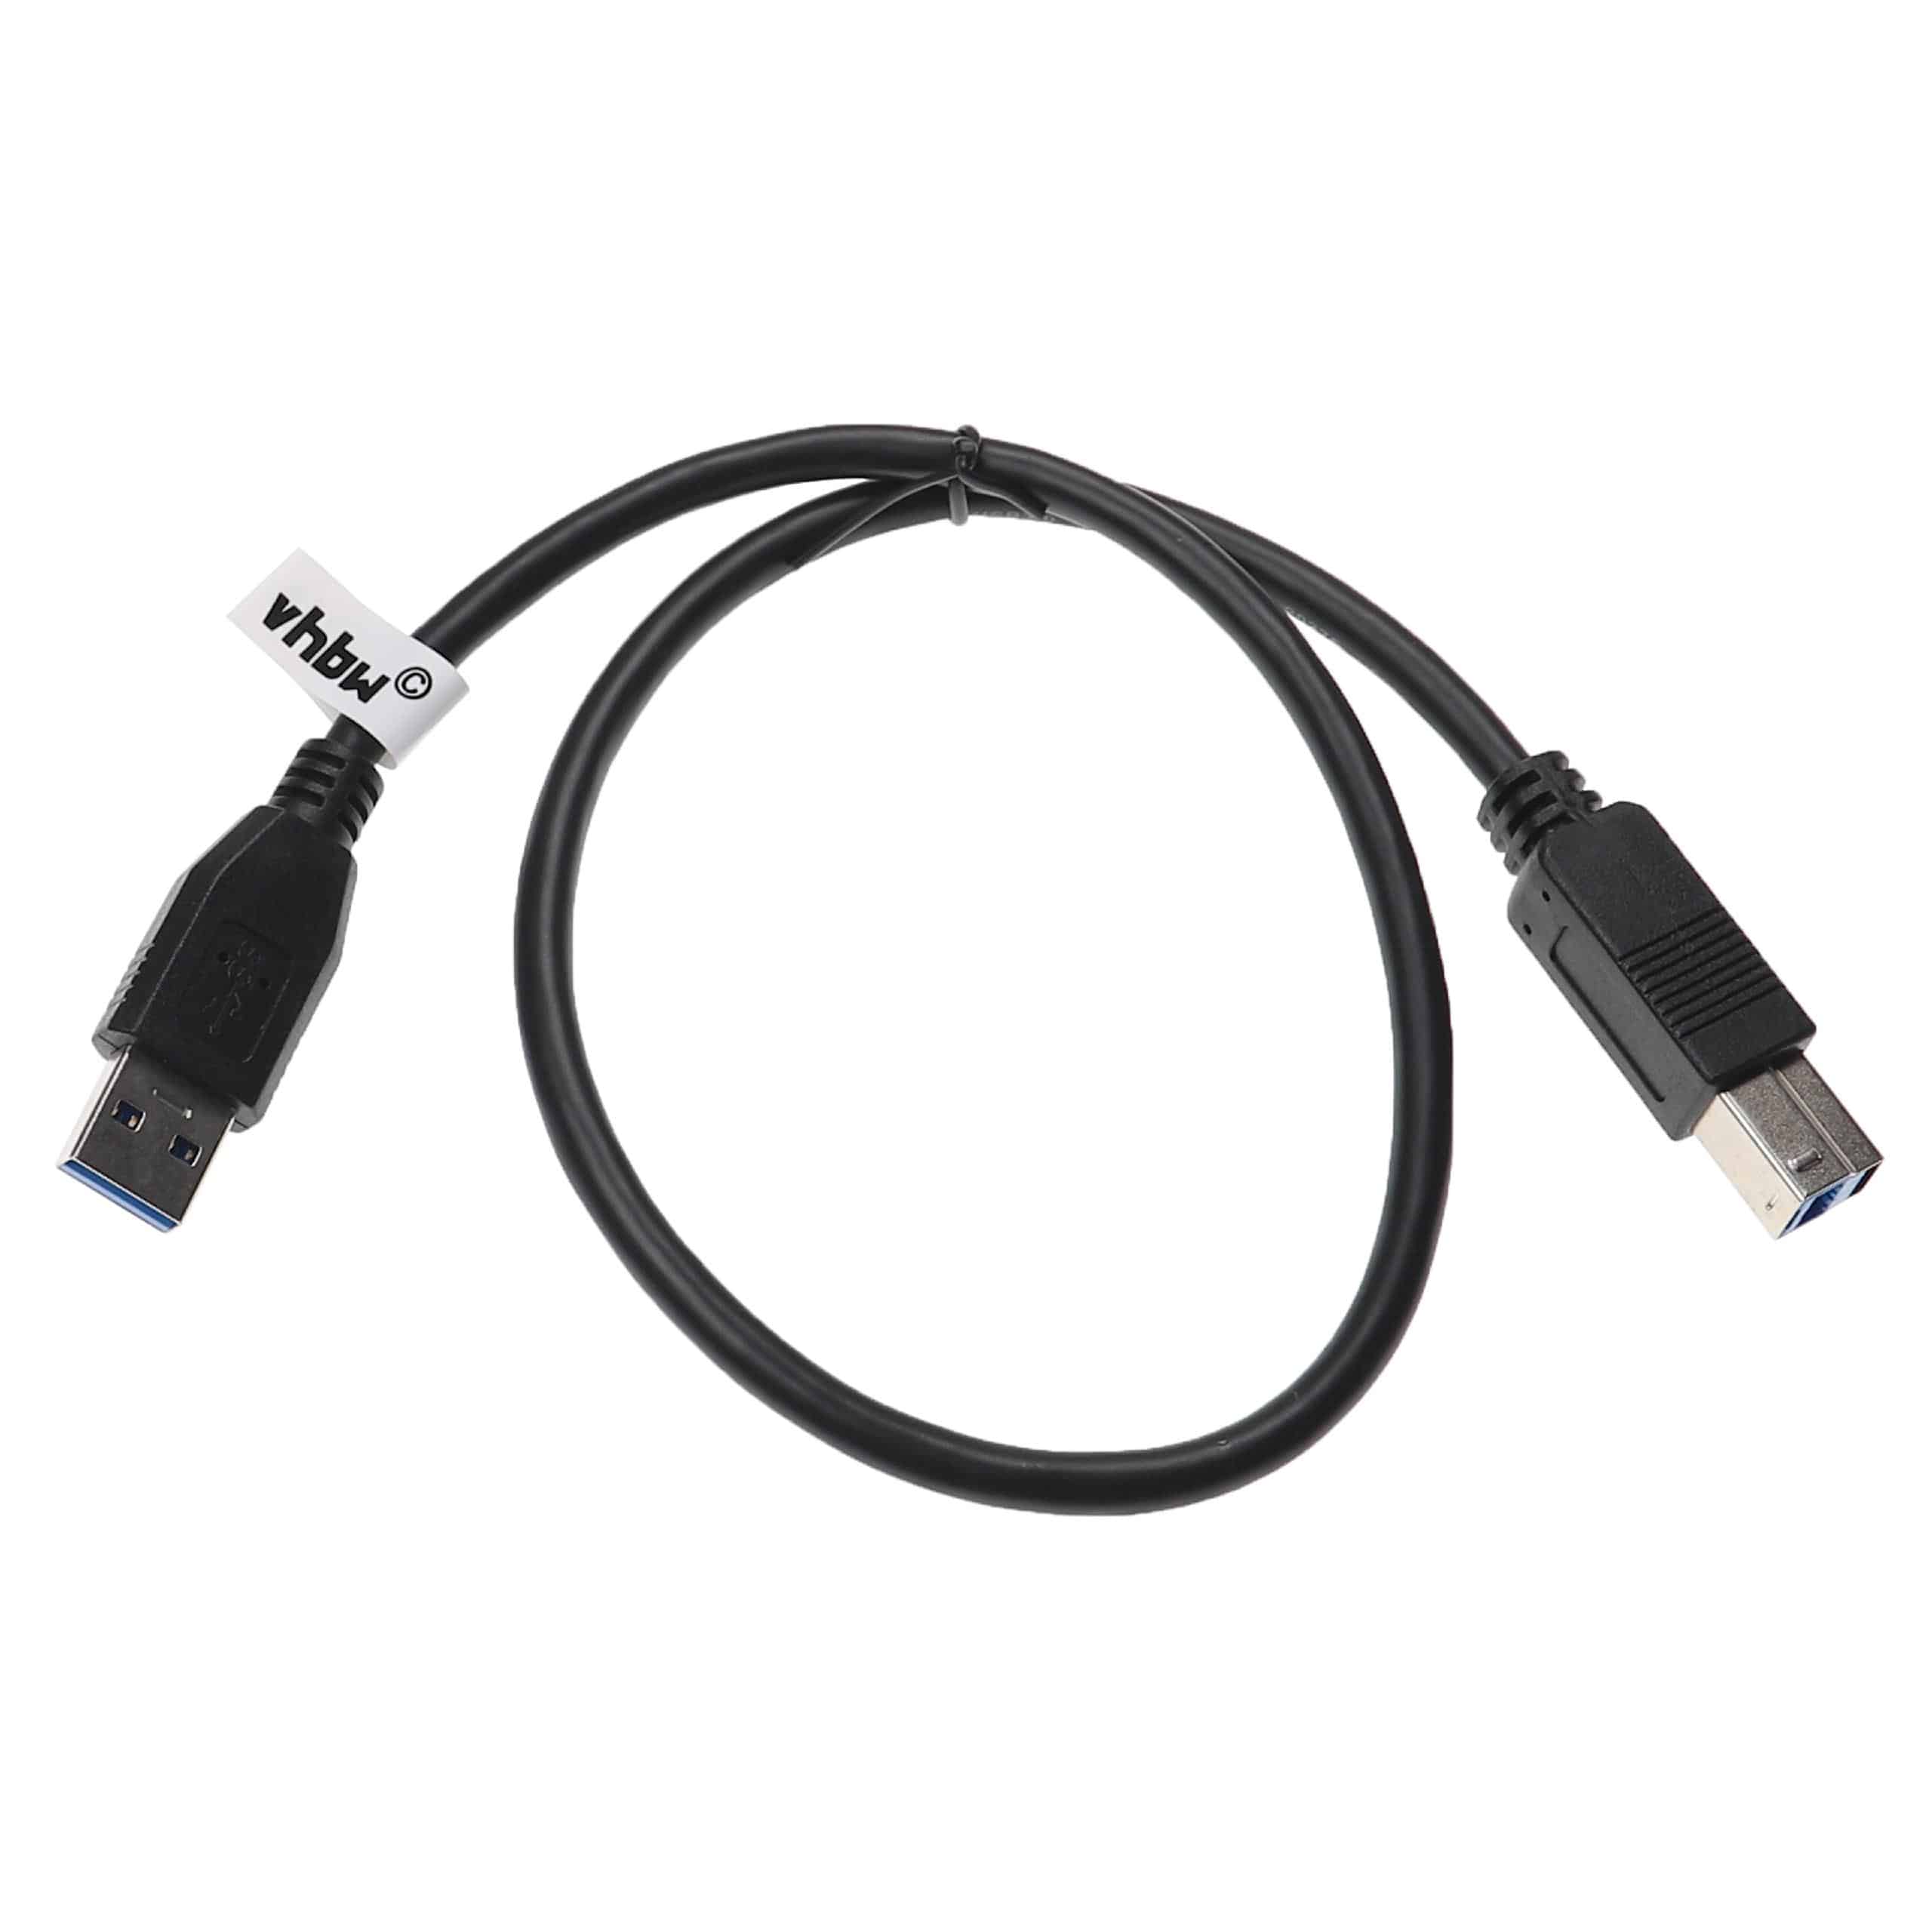 Cable USB 3.0 tipo A a tipo B - Cable de datos USB 50 cm negro